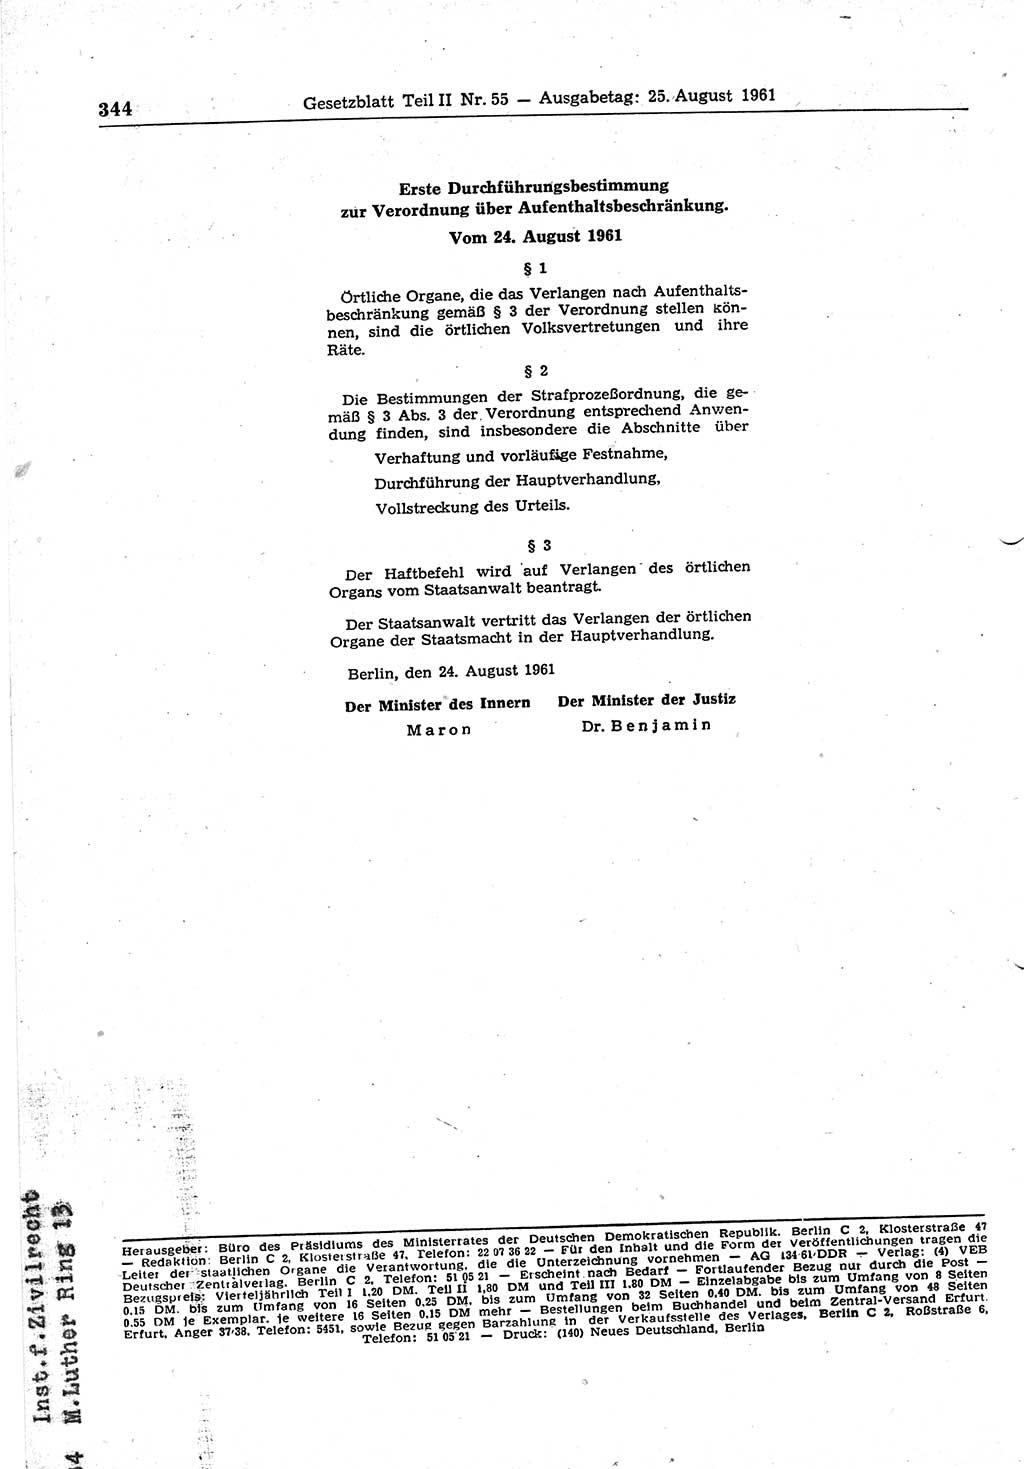 Gesetzblatt (GBl.) der Deutschen Demokratischen Republik (DDR) Teil ⅠⅠ 1961, Seite 344 (GBl. DDR ⅠⅠ 1961, S. 344)